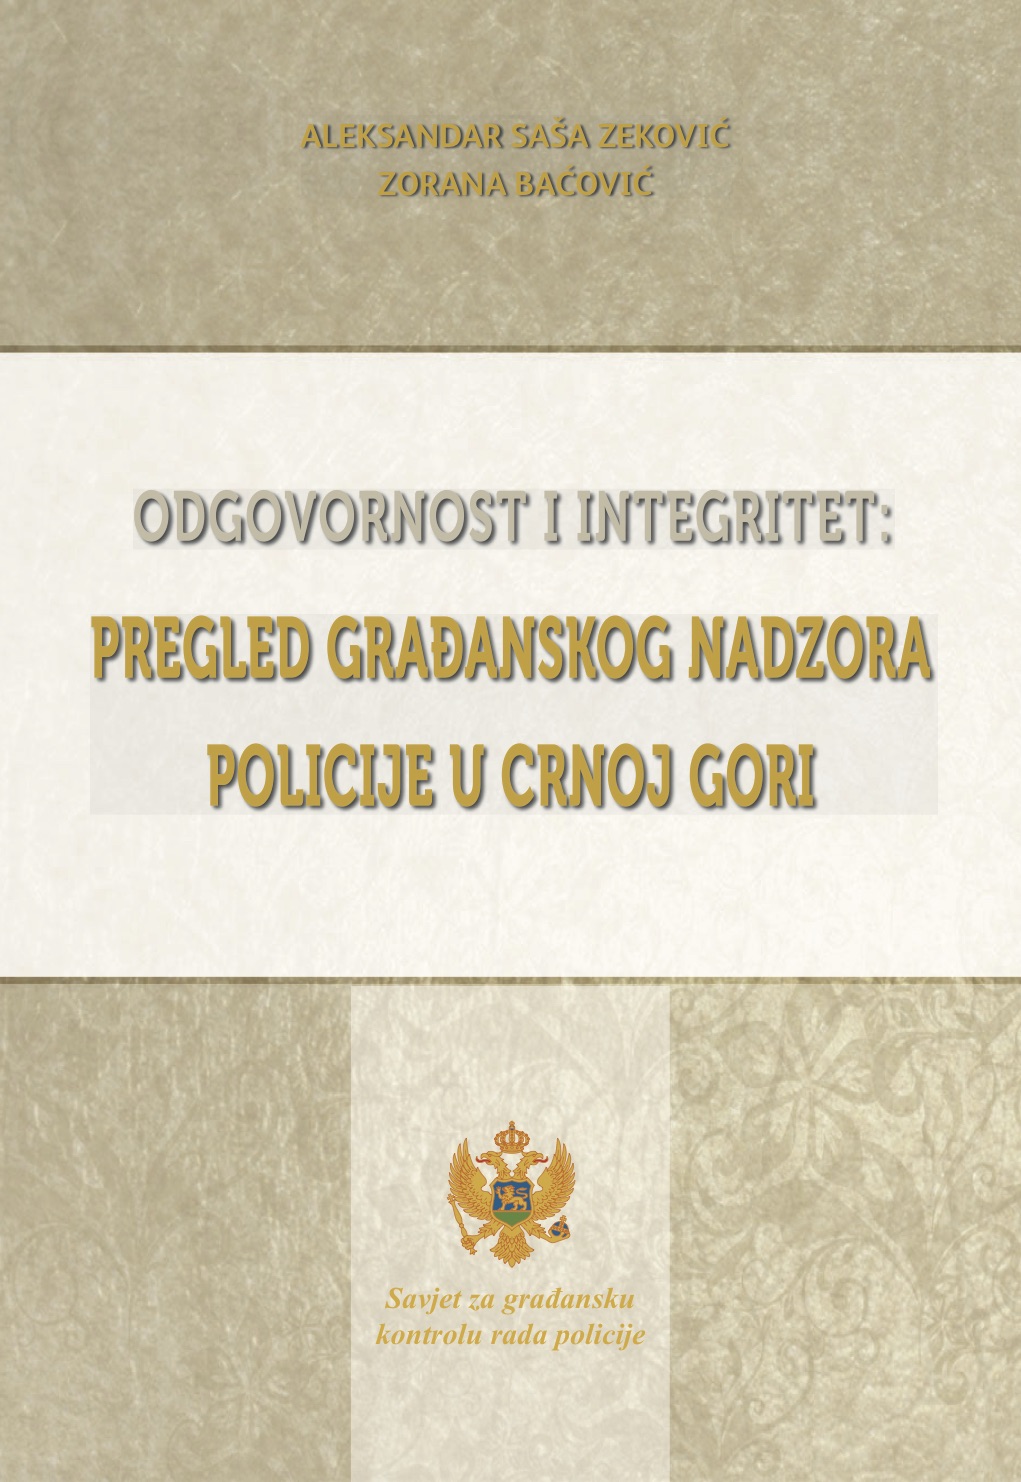 Odgovornost i integritet: Pregled građanskog nadzora policije u Crnoj Gori